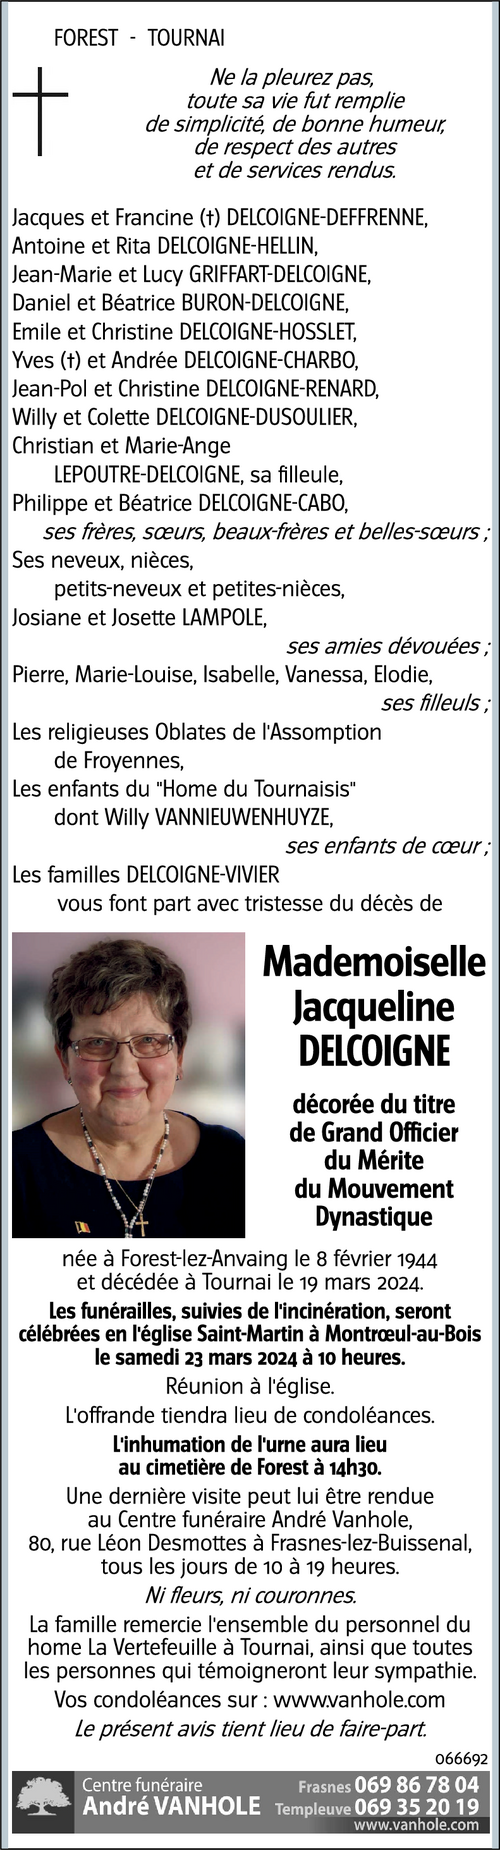 Jacqueline DELCOIGNE